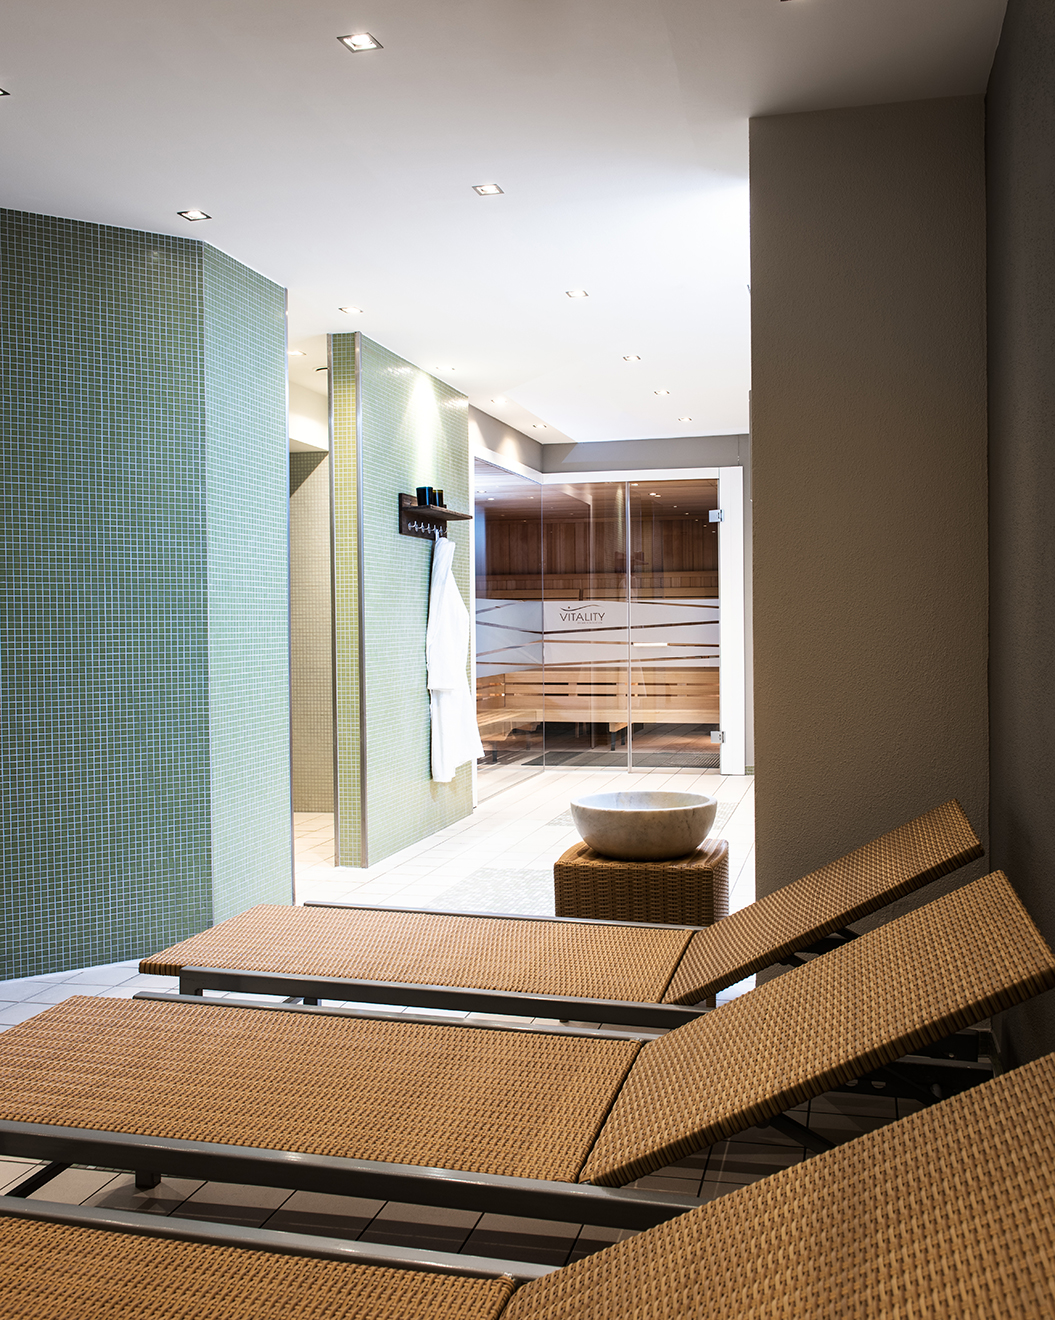 AMERON Köln Hotel Regent Vitality SPA mit Sauna und Dusche und Liegen